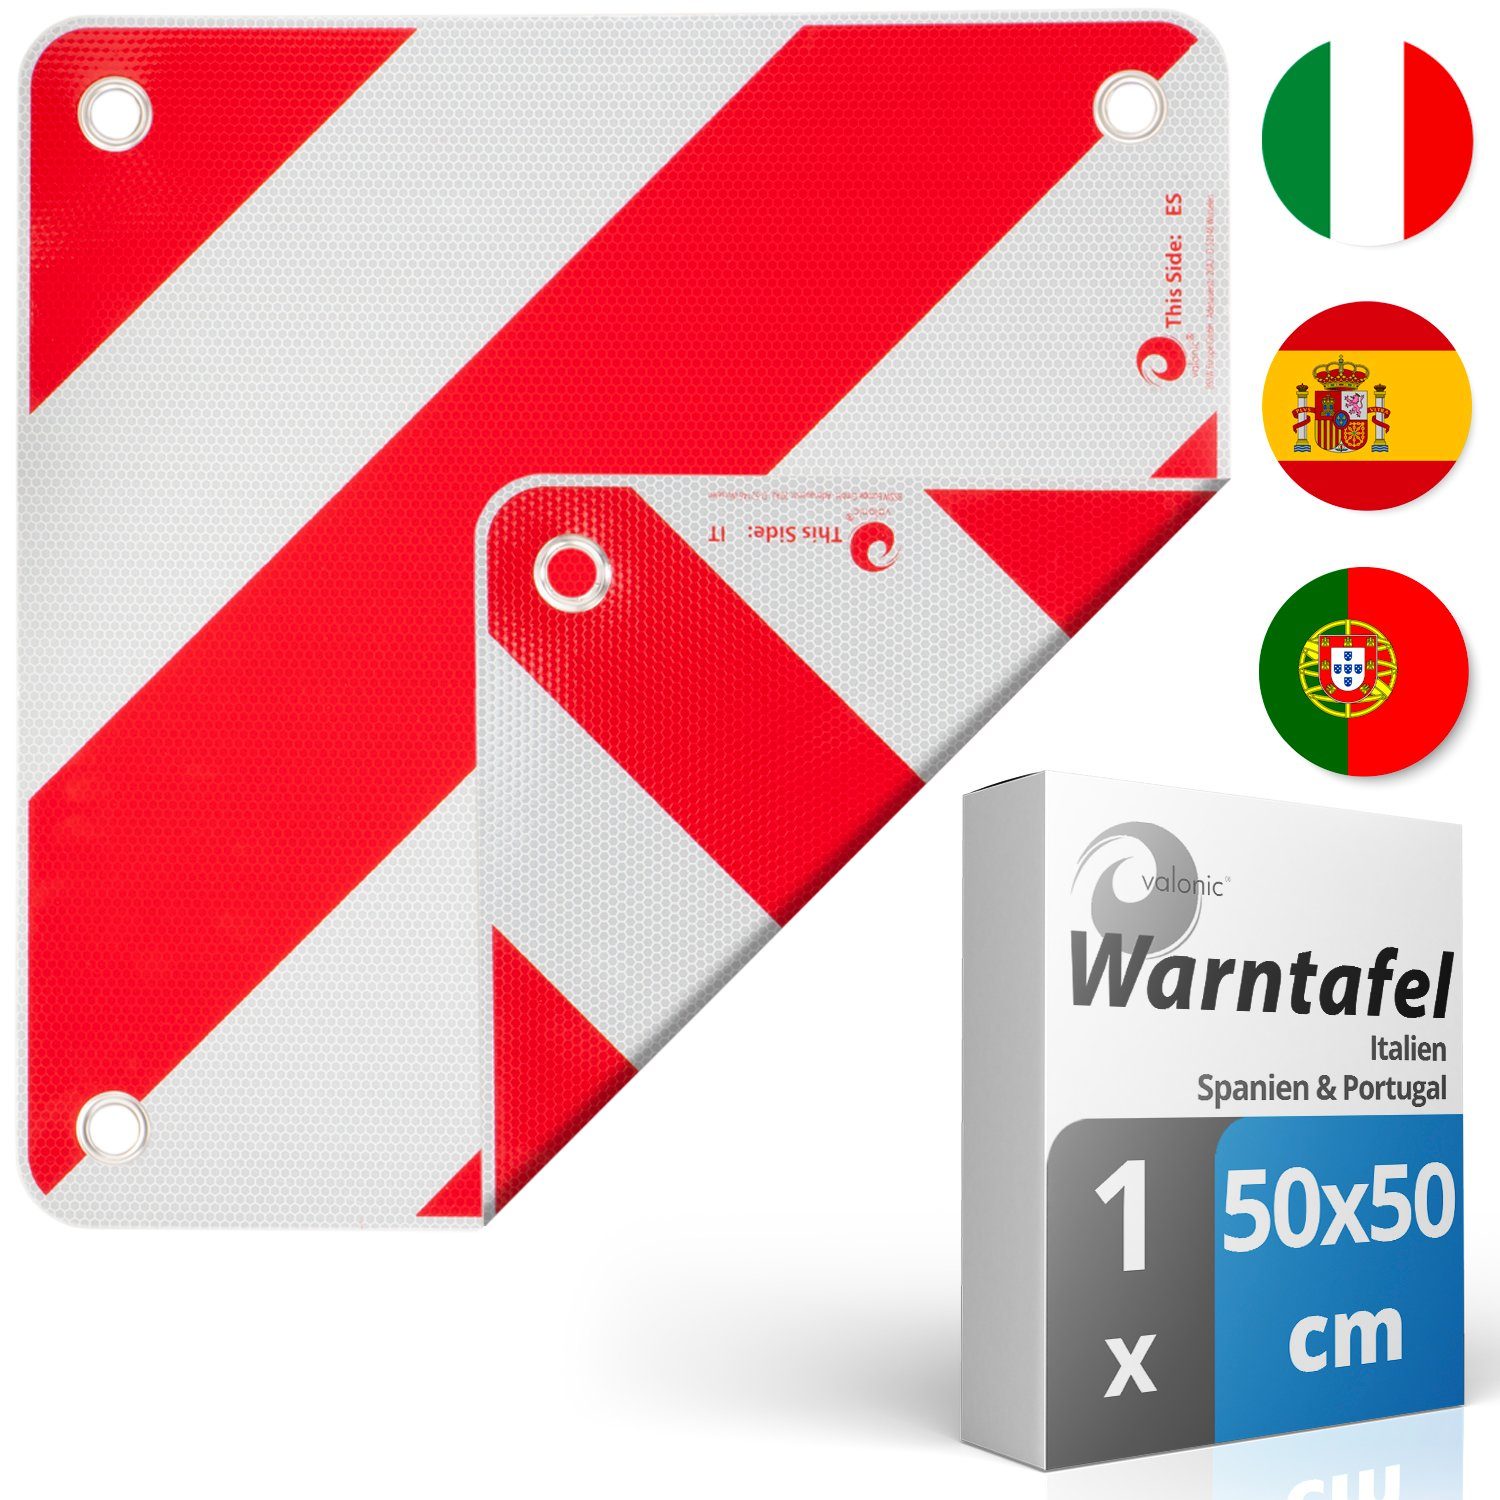 valonic Warnschild valonic Premium Warntafel - 2in1 für IT, ES und PRT -  Robustes PVC